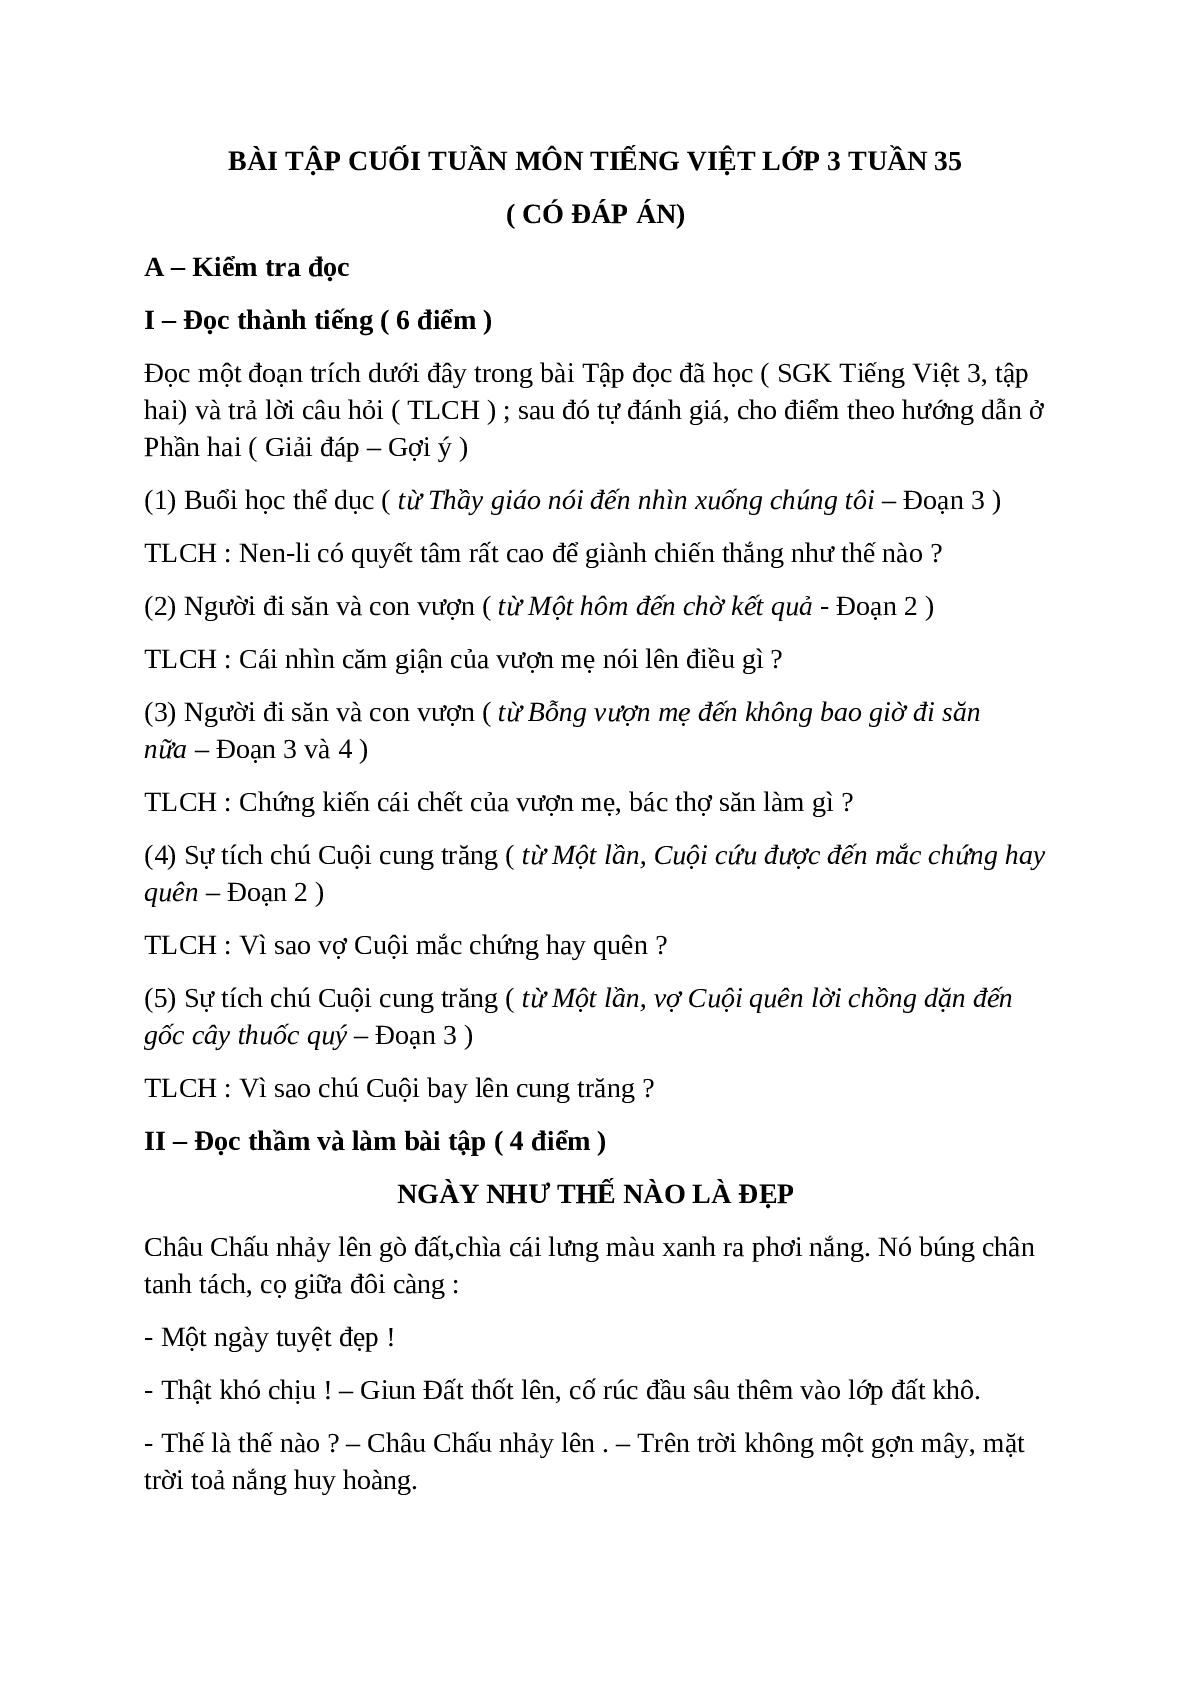 Bài tập cuối tuần môn Tiếng Việt lớp 3 tuần 35 có đáp án - đề 1 (trang 1)